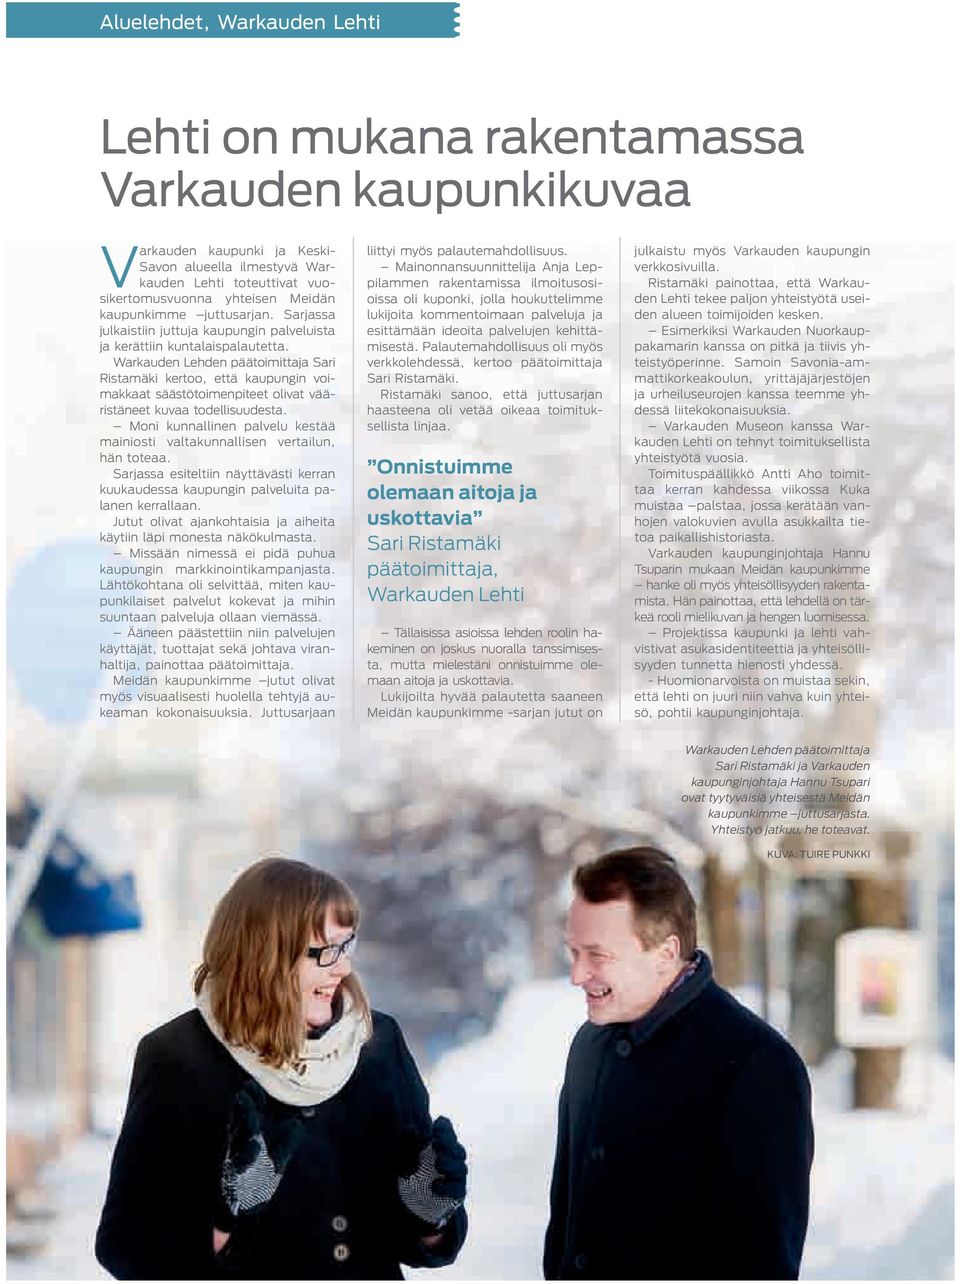 Warkauden Lehden päätoimittaja Sari Ristamäki kertoo, että kaupungin voimakkaat säästötoimenpiteet olivat vääristäneet kuvaa todellisuudesta.